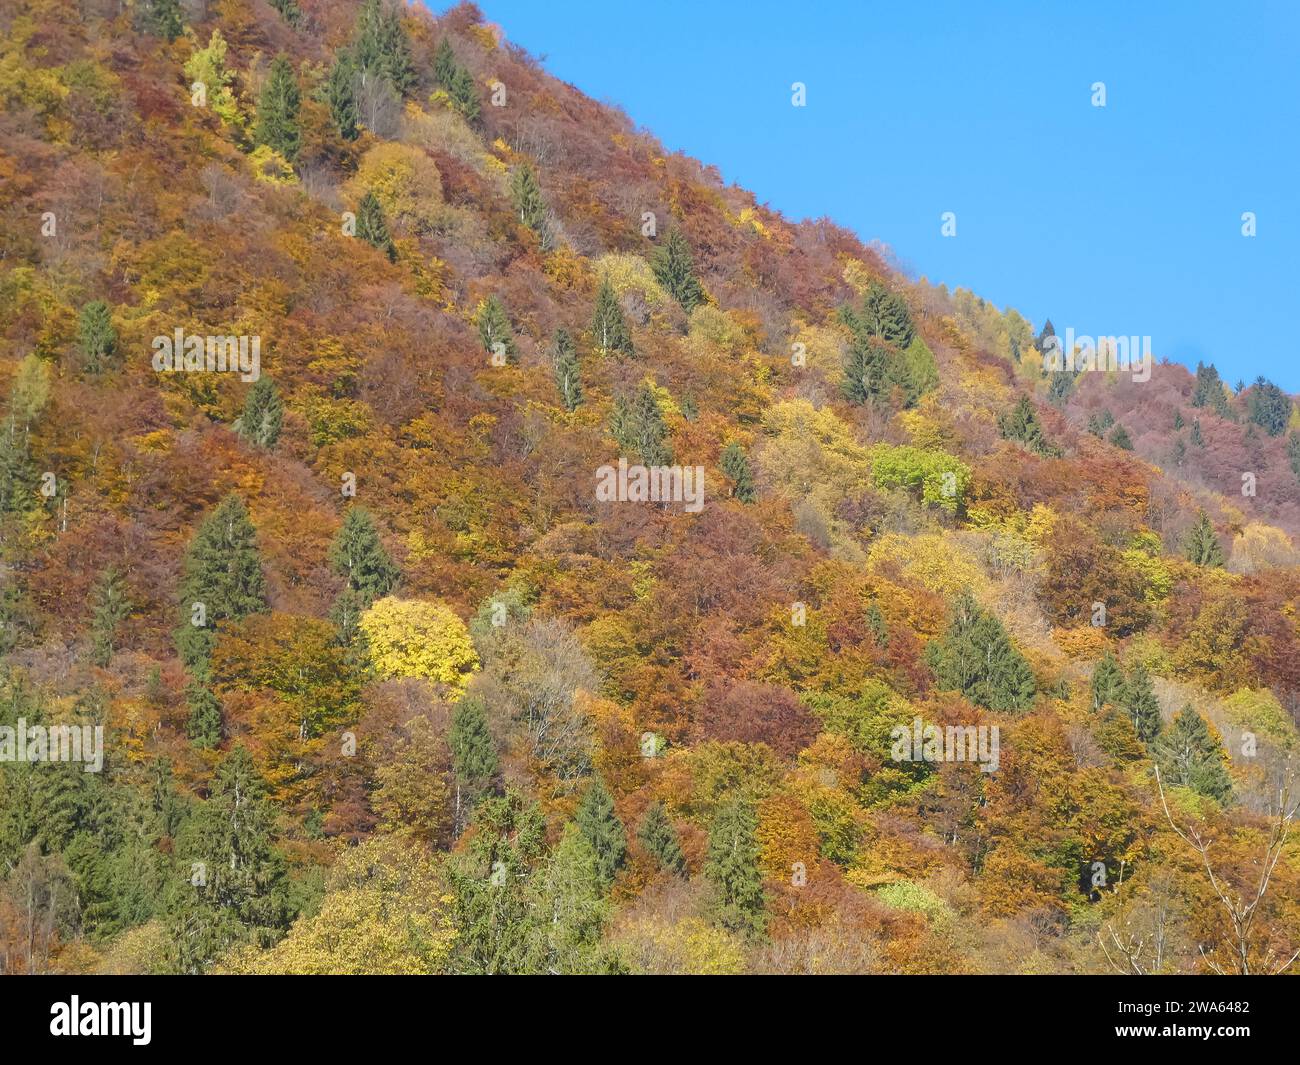 vue sur la montagne avec des arbres au feuillage rouge jaune et orange en automne Banque D'Images